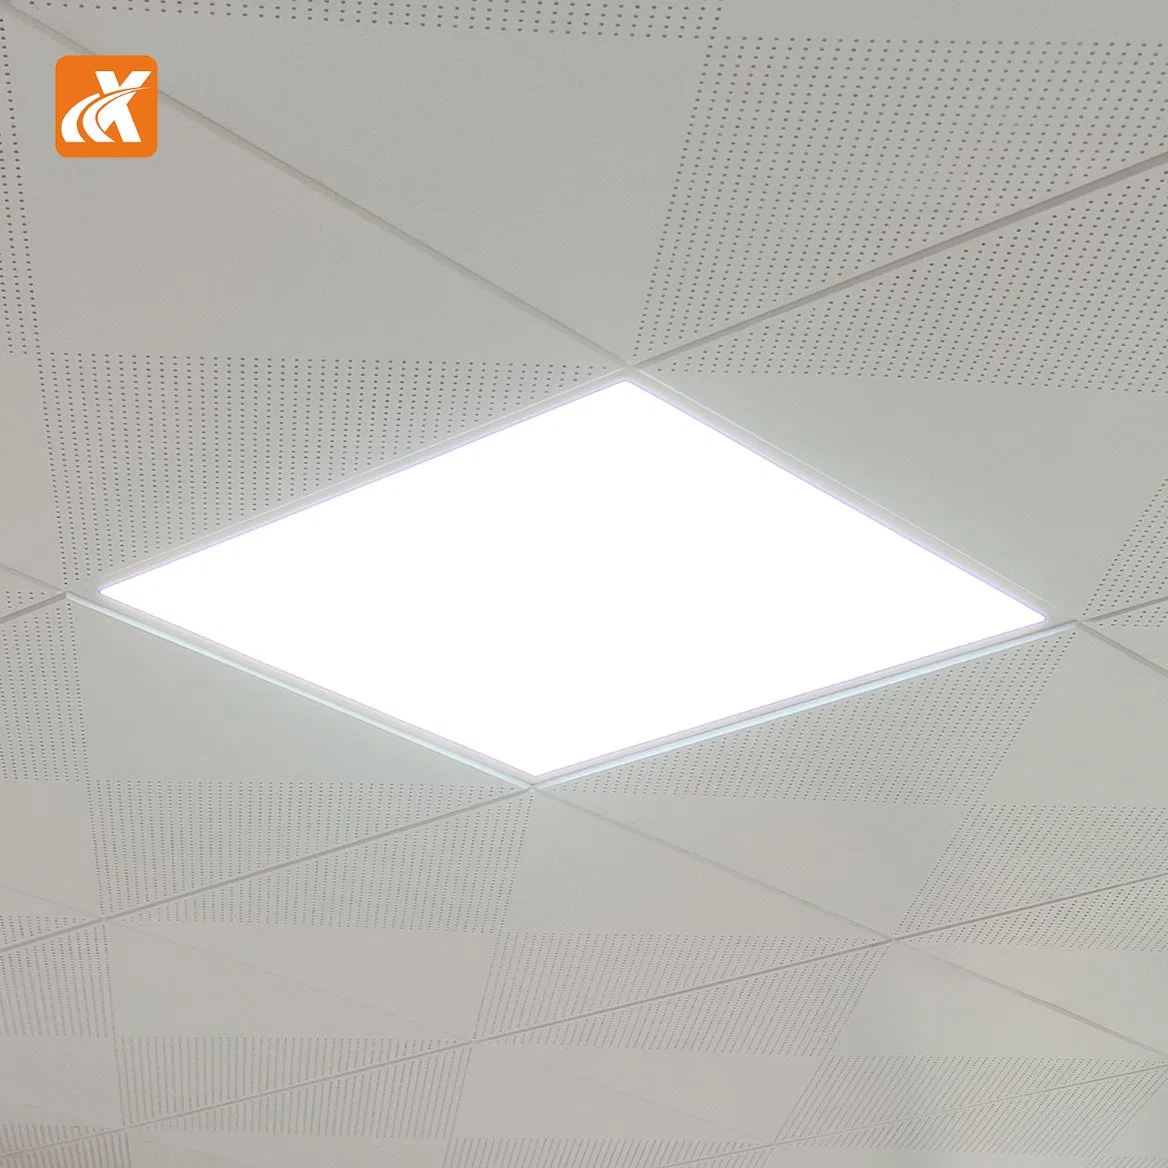 إضاءة لوحة LED مسطحة احترافية طراز LED طراز S100X CE بقدرة 100 واط طراز DMX512 فيديو تأثير فيضان ضوء عالي السطوع استوديو غرفة الاجتماعات لايف اعرض ضوء Eyesheld